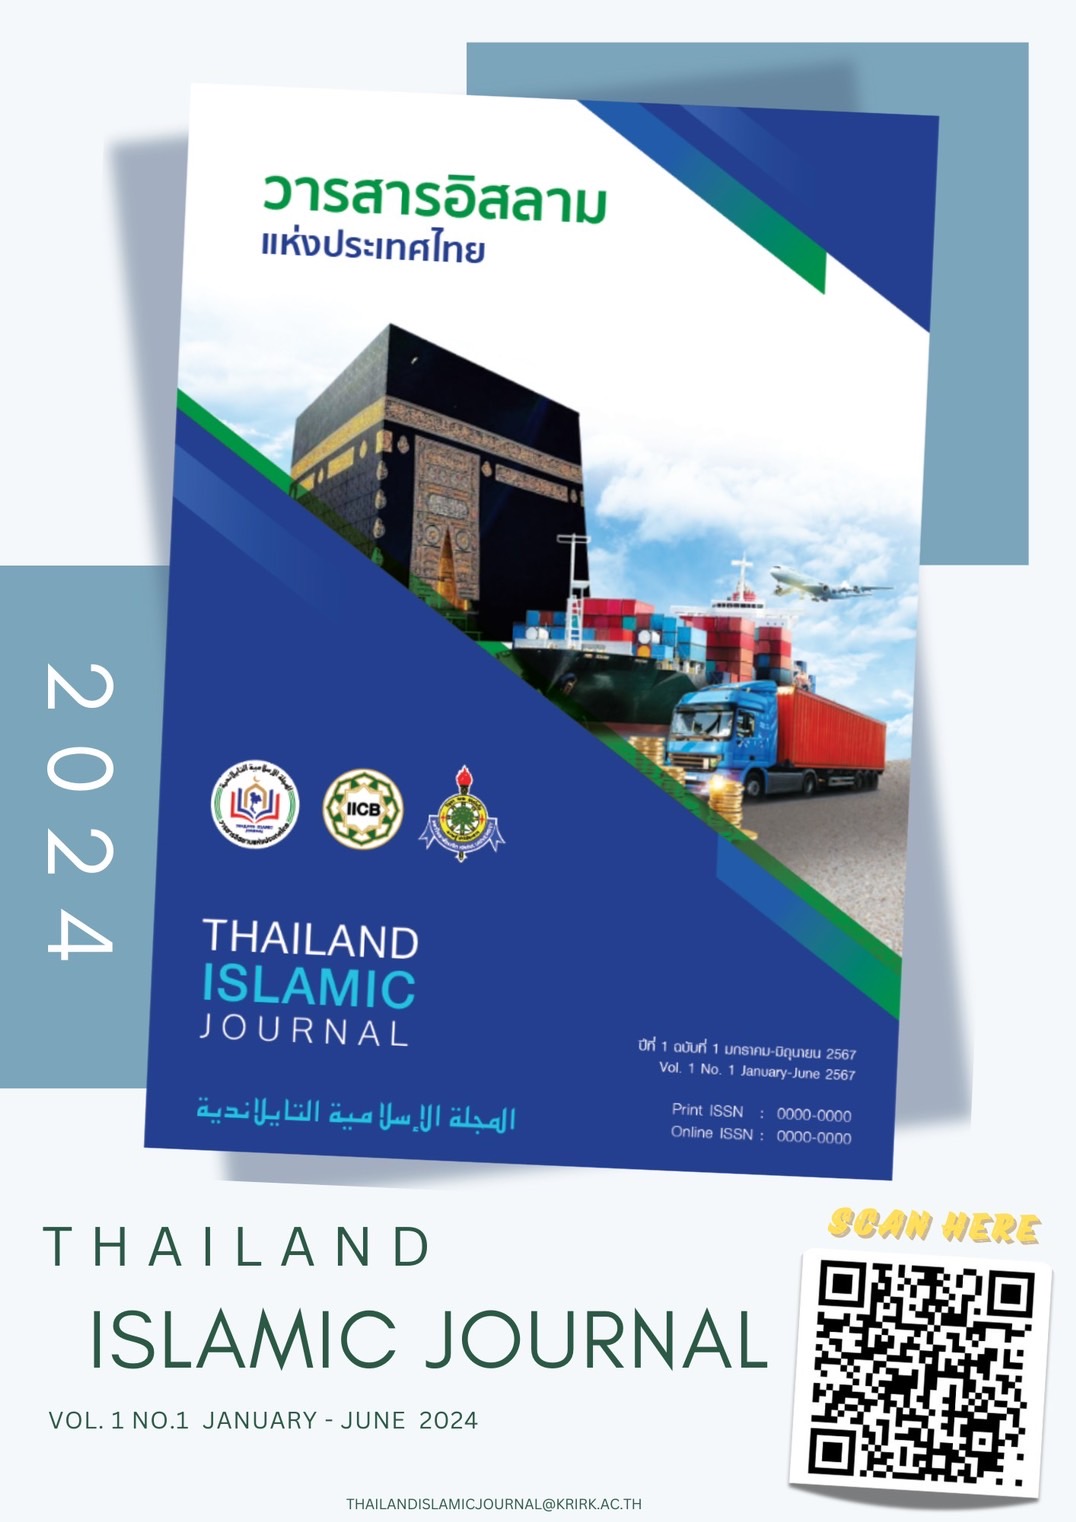 วารสารอิสลามแห่งประเทศไทย (Thailand Islamic Journal) ปีที่ 1 ฉบับที่ 1